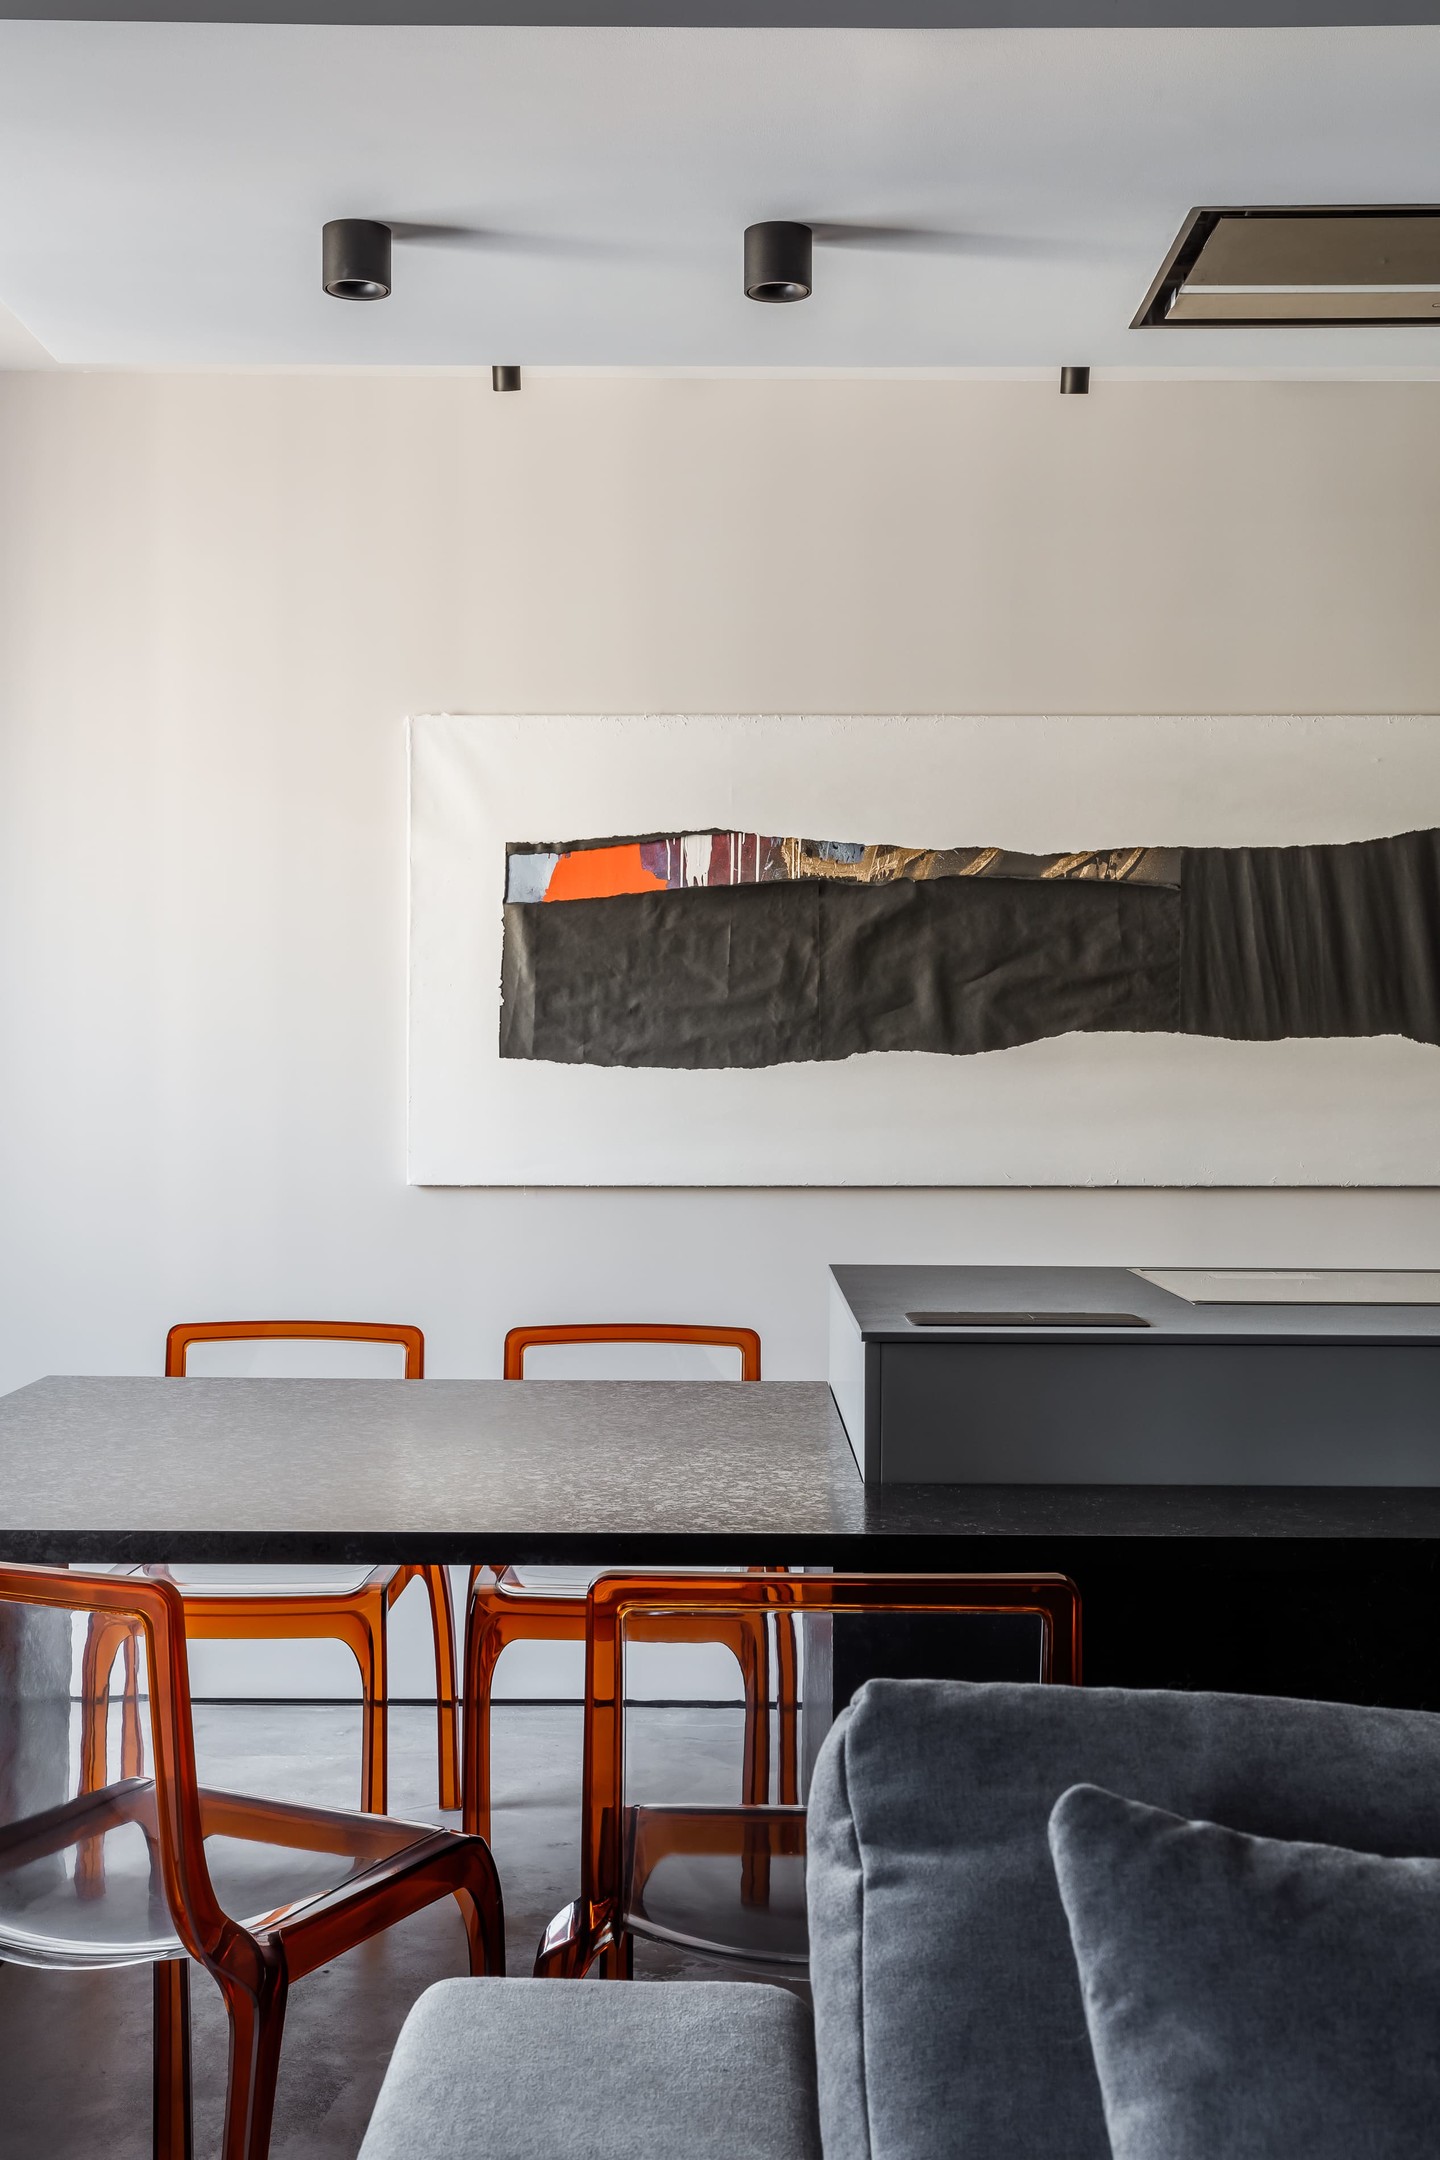 Phòng ăn bố trí ngay sau lưng ghế sofa, ở vị trí vuông góc với phòng bếp. Thiết kế bàn hình chữ nhật tối giản, nổi bật những chiếc ghế nhựa acrylic màu cam đẹp mắt. Trên bức tường cũng được trang trí một tác phẩm nghệ thuật trừu tượng độc lạ.